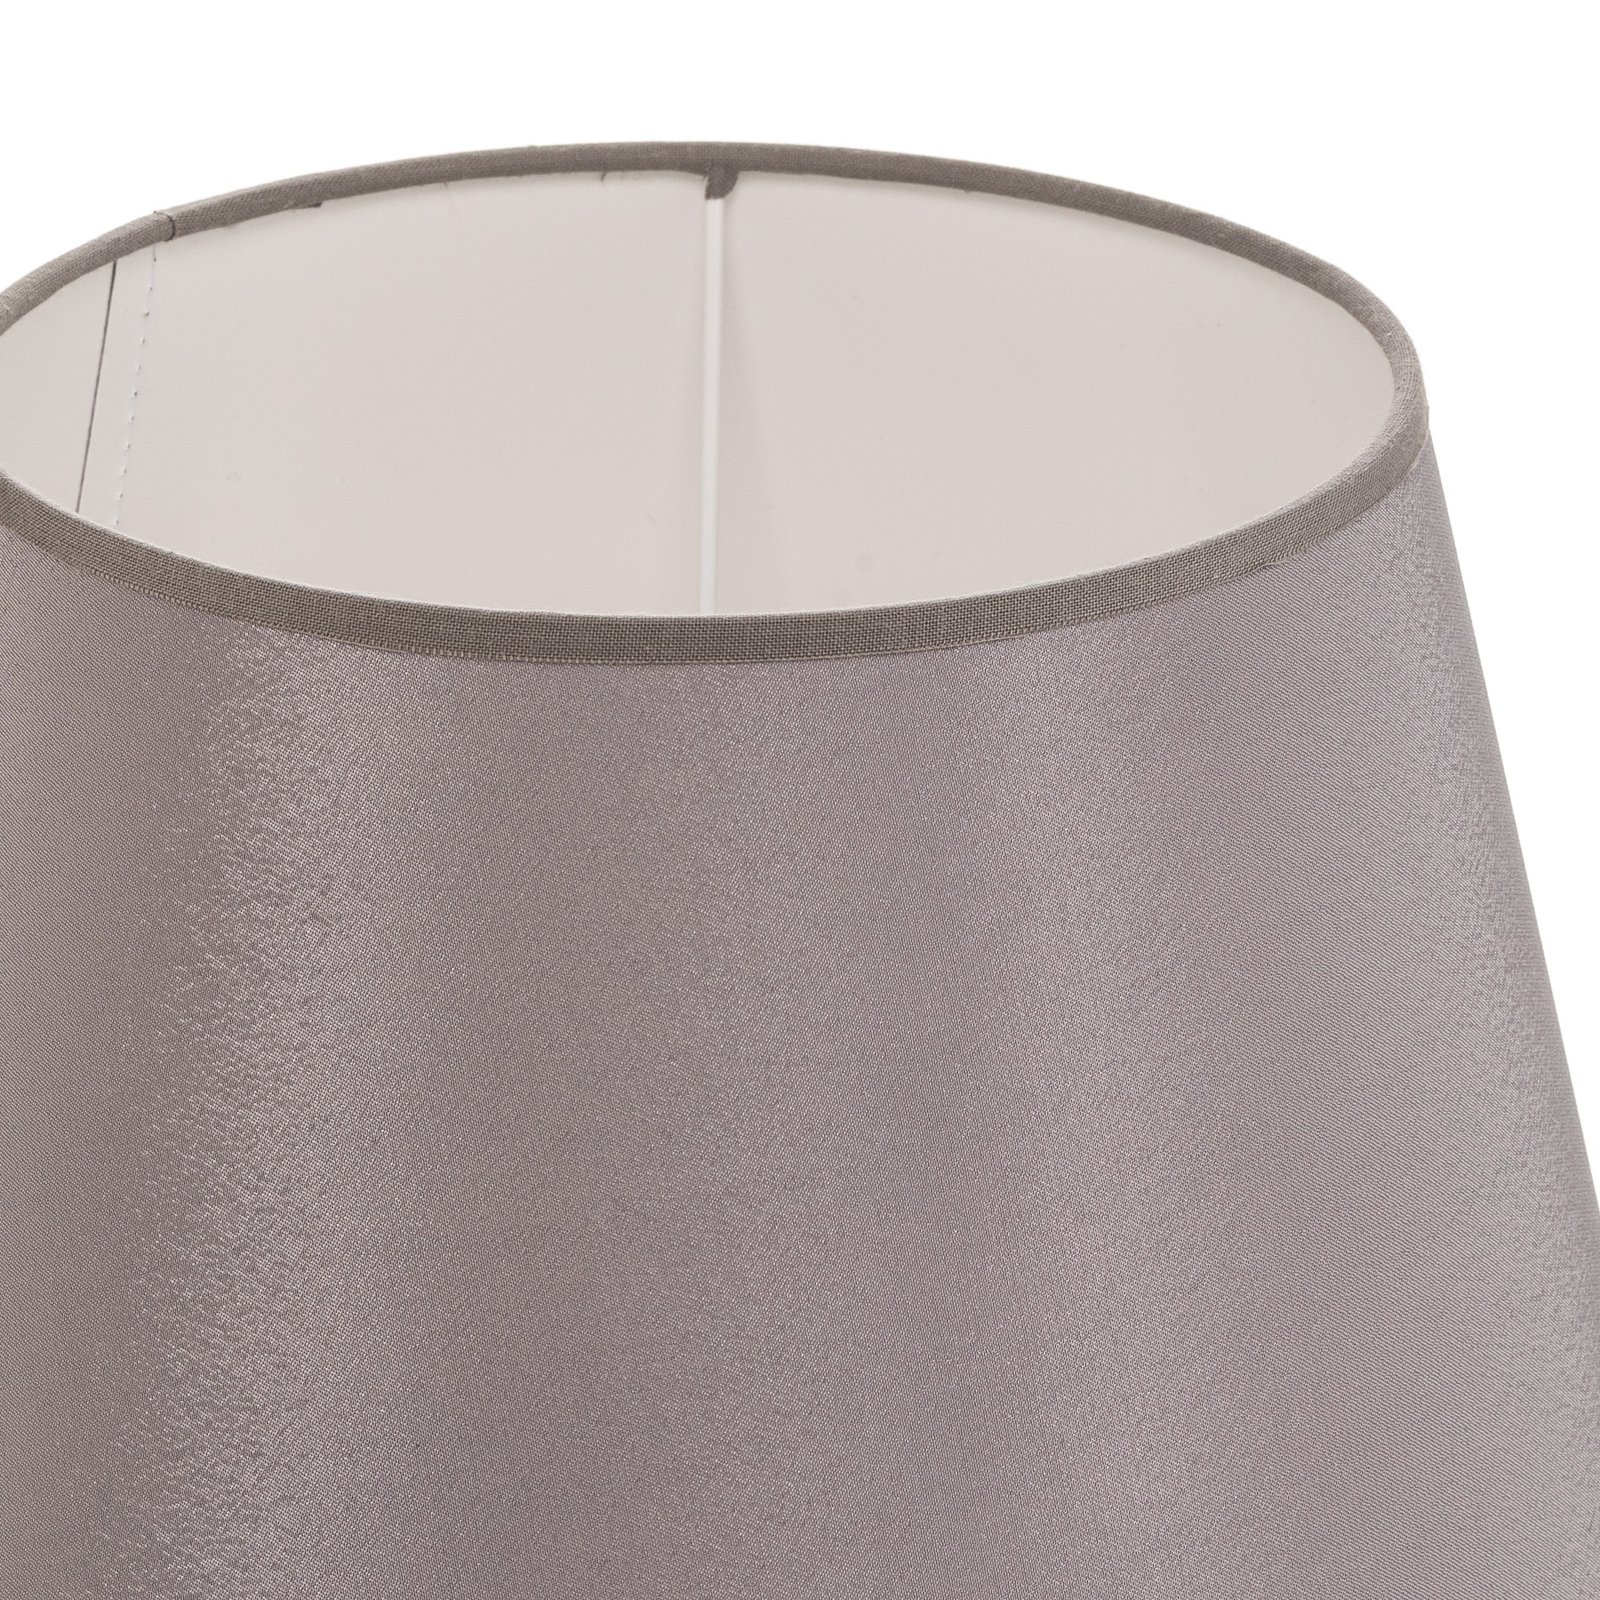 Lampskärm Cone höjd 18 cm, chintz grå/vit